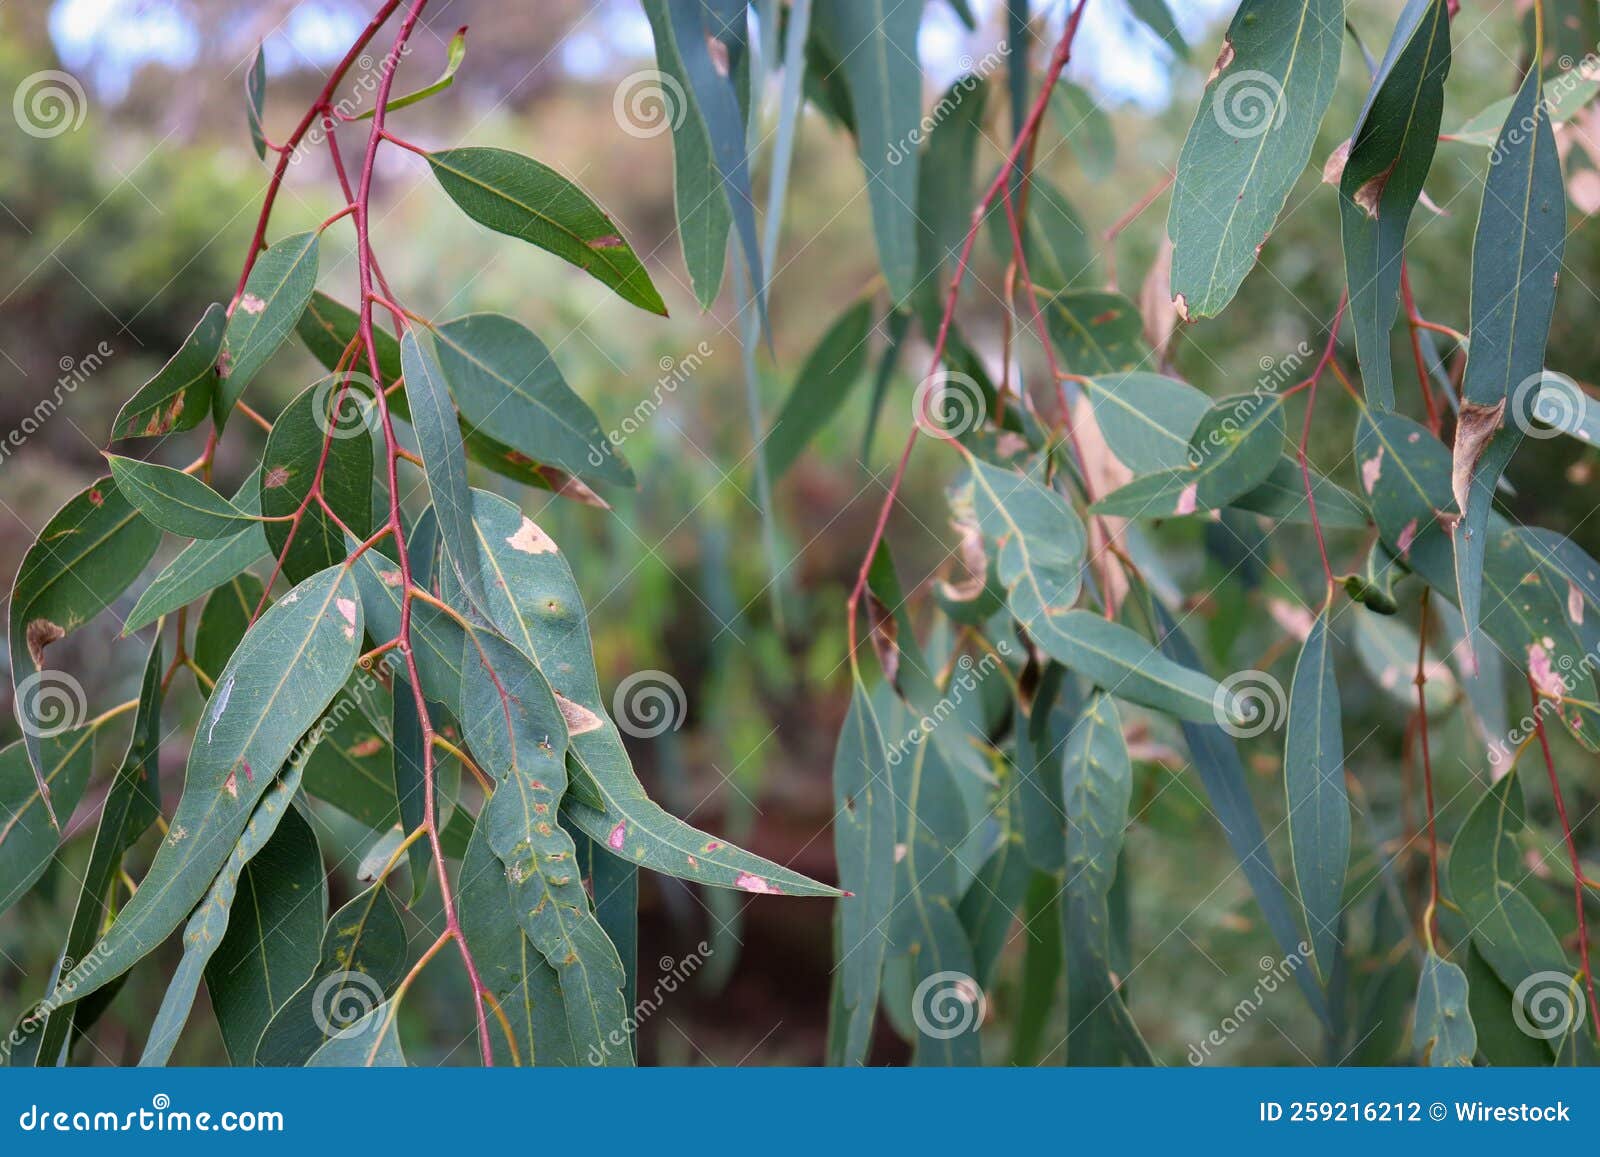 eucalyptus leaves in bush land